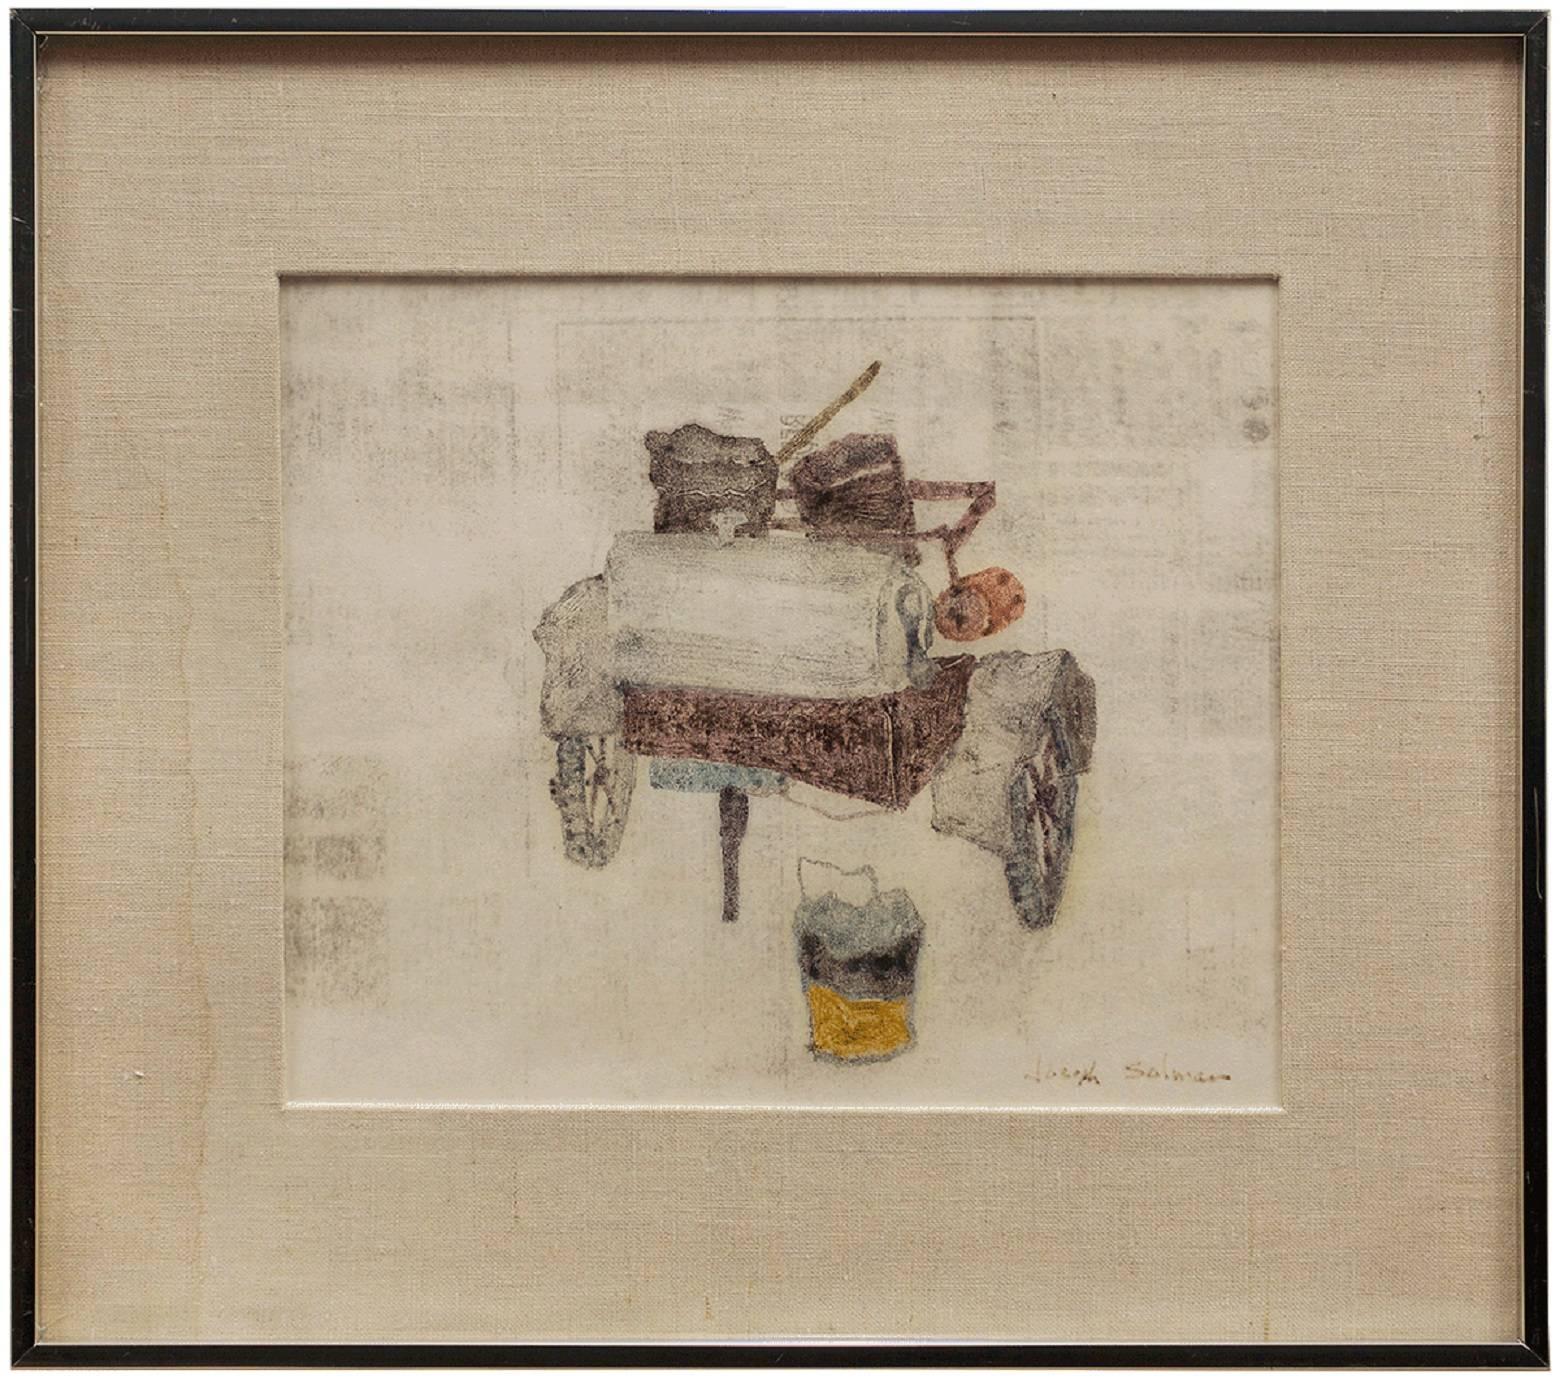 Vieux wagon de cheminée, monotype - Art de Joseph Solman